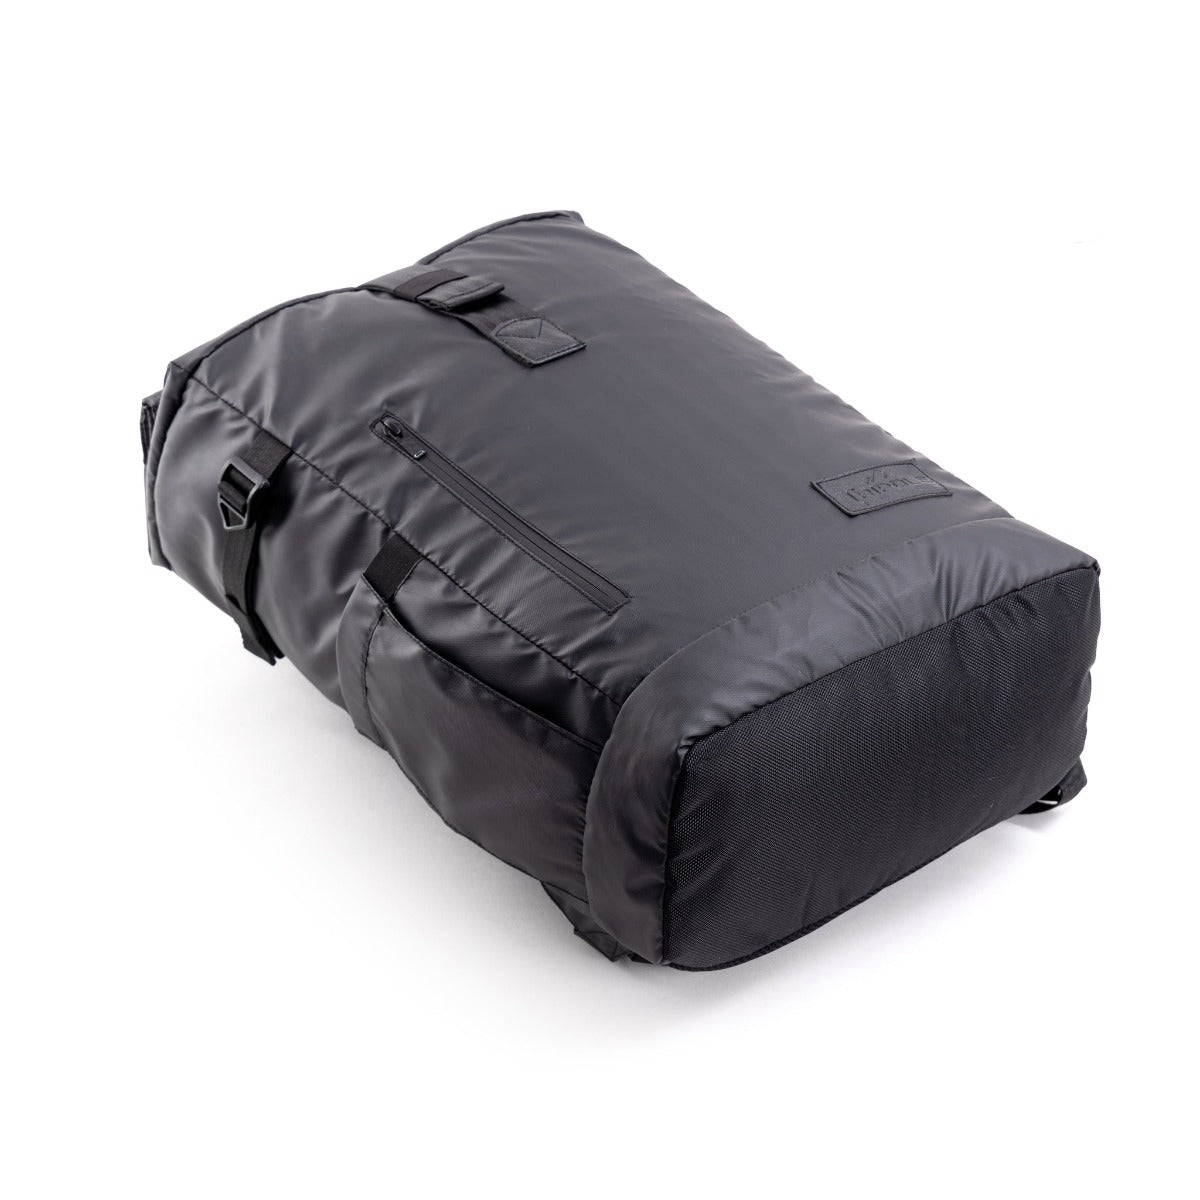 Tusker Roller Top Laptop Backpack - 35 Litre 10